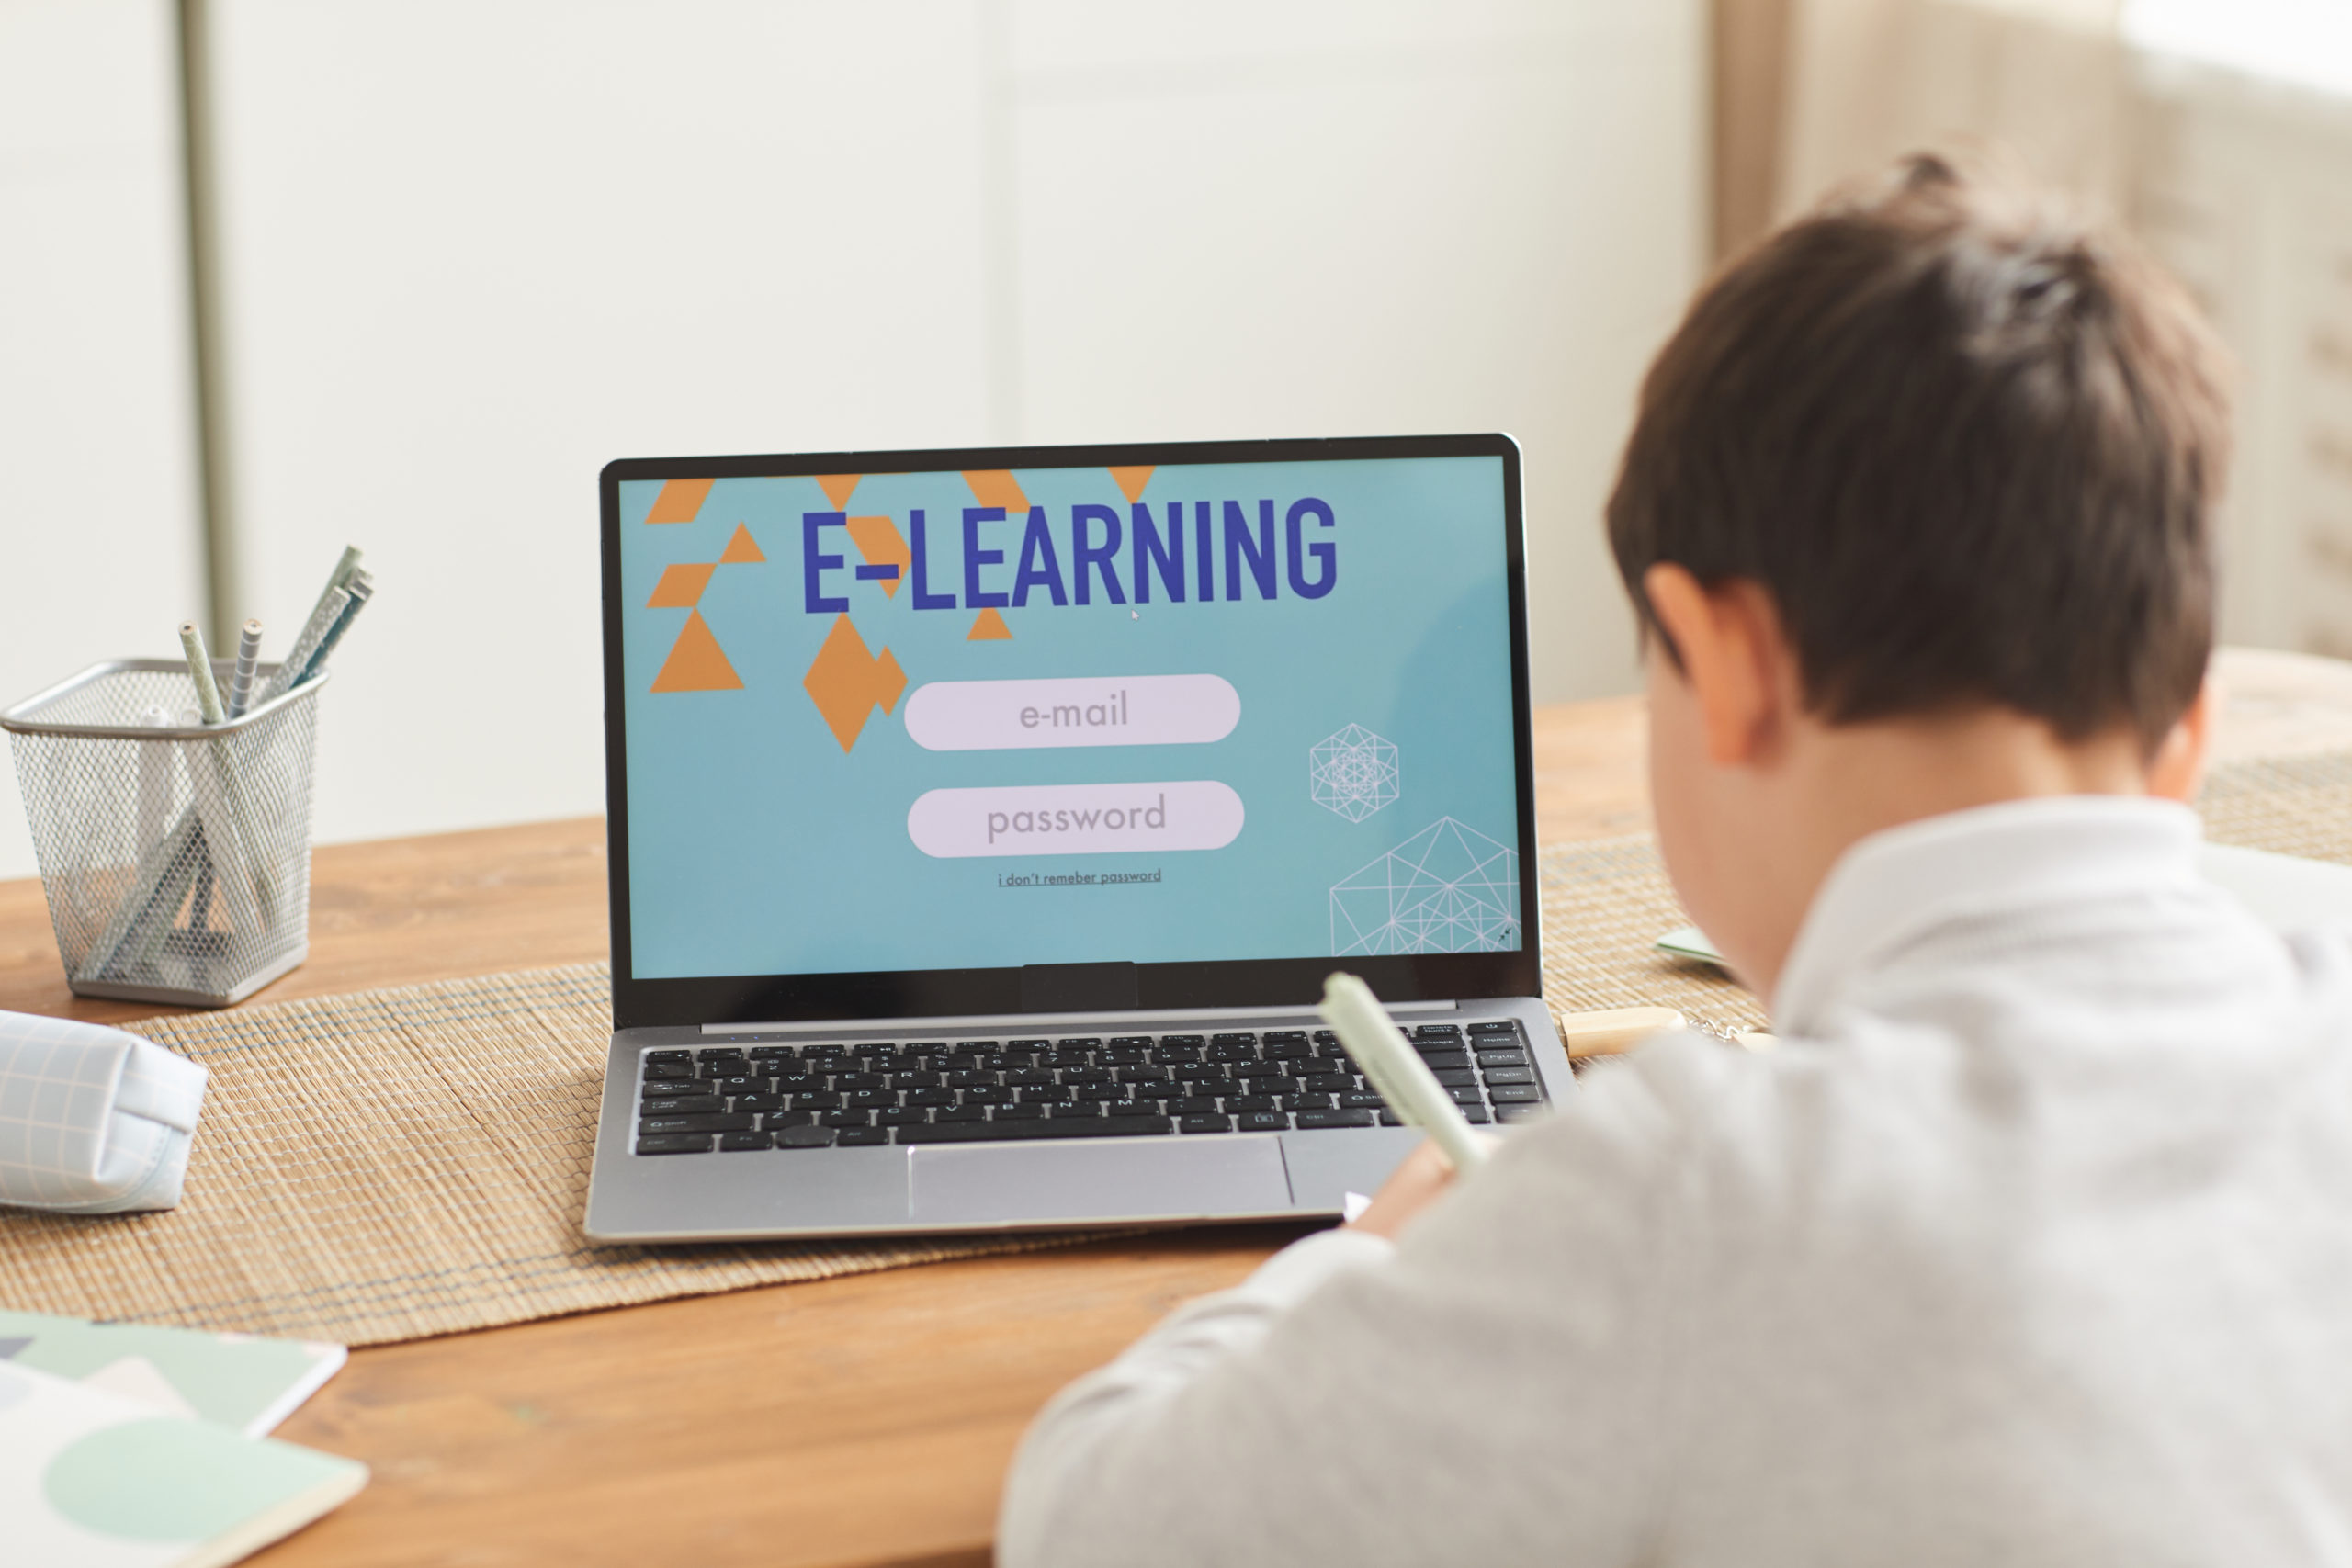 Государственные сайты обучение. Learning website. E-Learning. Электронное обучение картинки. E-Learning site.